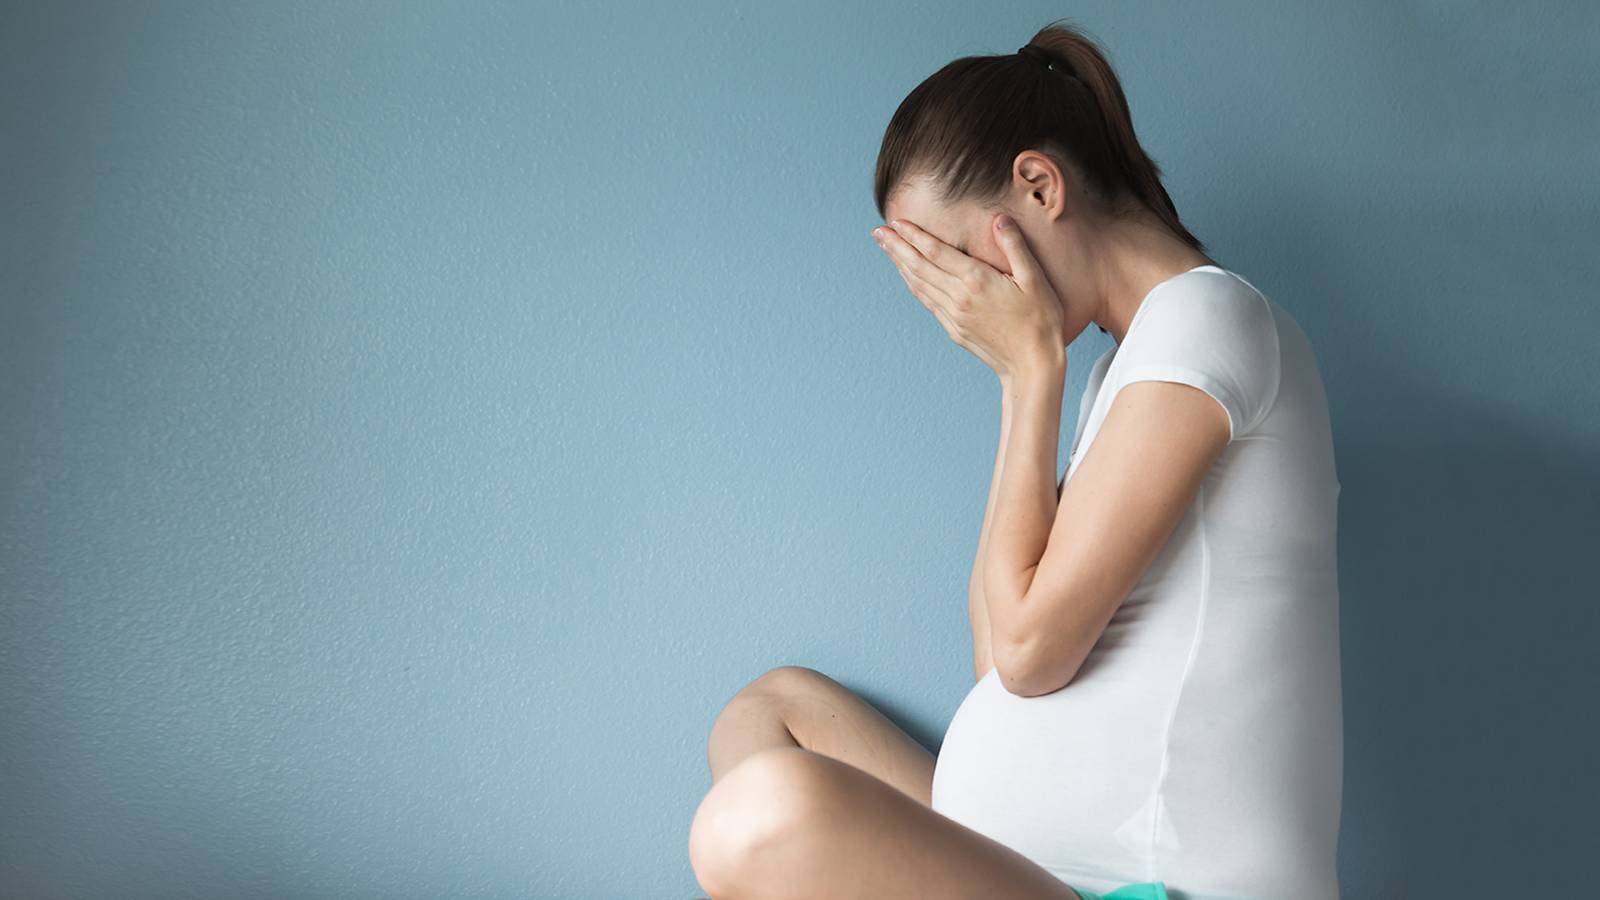 4 ترس بزرگی که در دوران بارداری تجربه میکنید؛ علل، علائم و چگونگی غلبه بر استرس بارداری